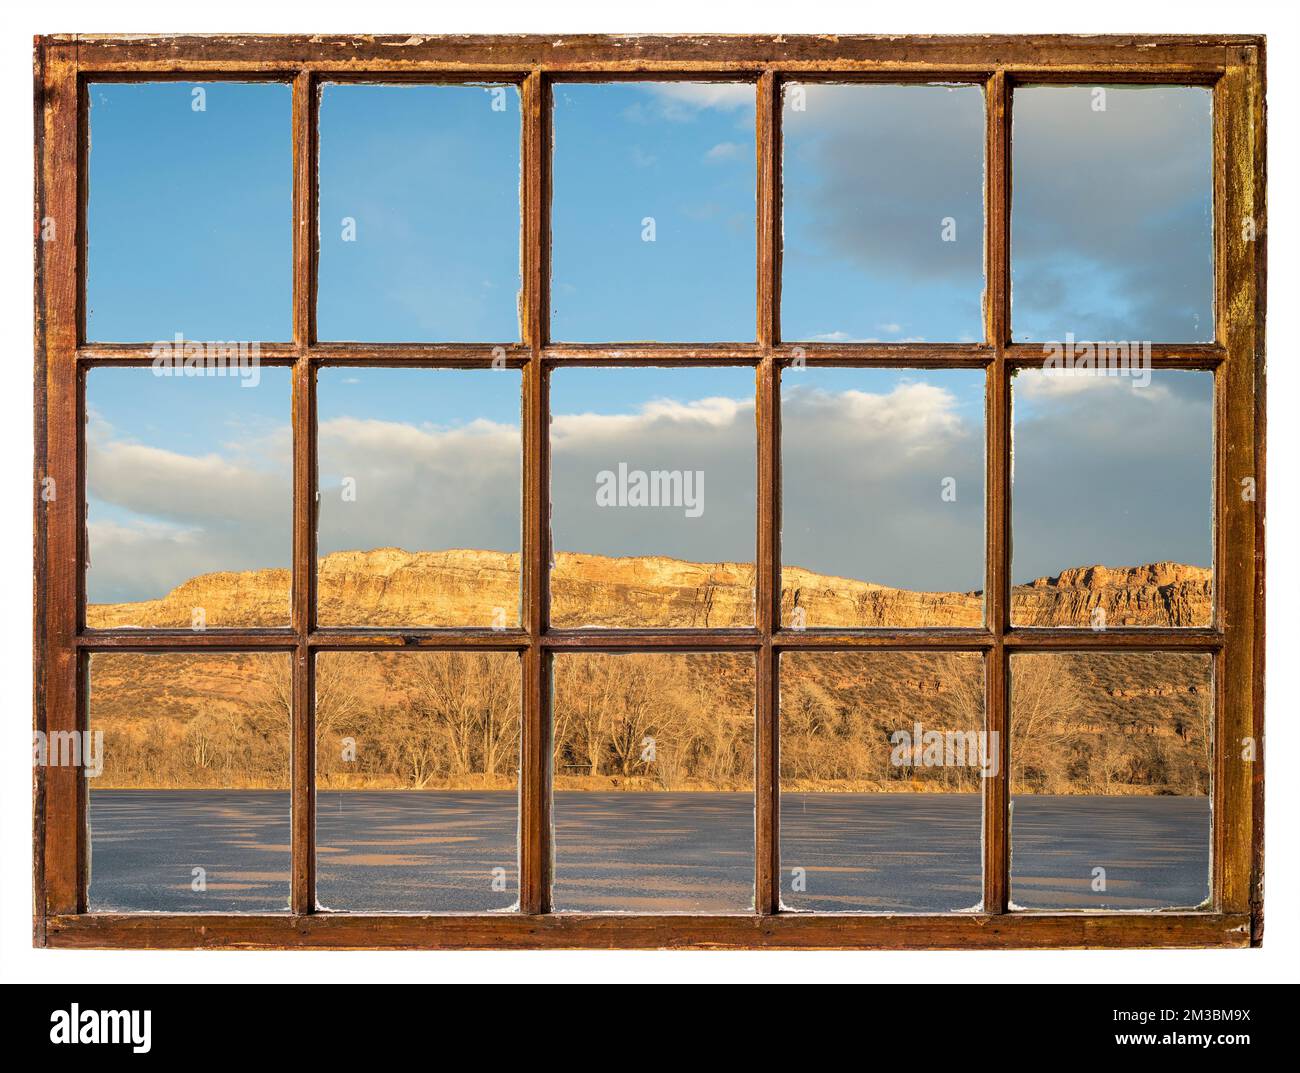 Coucher de soleil sur un lac gelé et une falaise de grès au pied du Colorado, vue sur une fenêtre de guillotine d'époque Banque D'Images